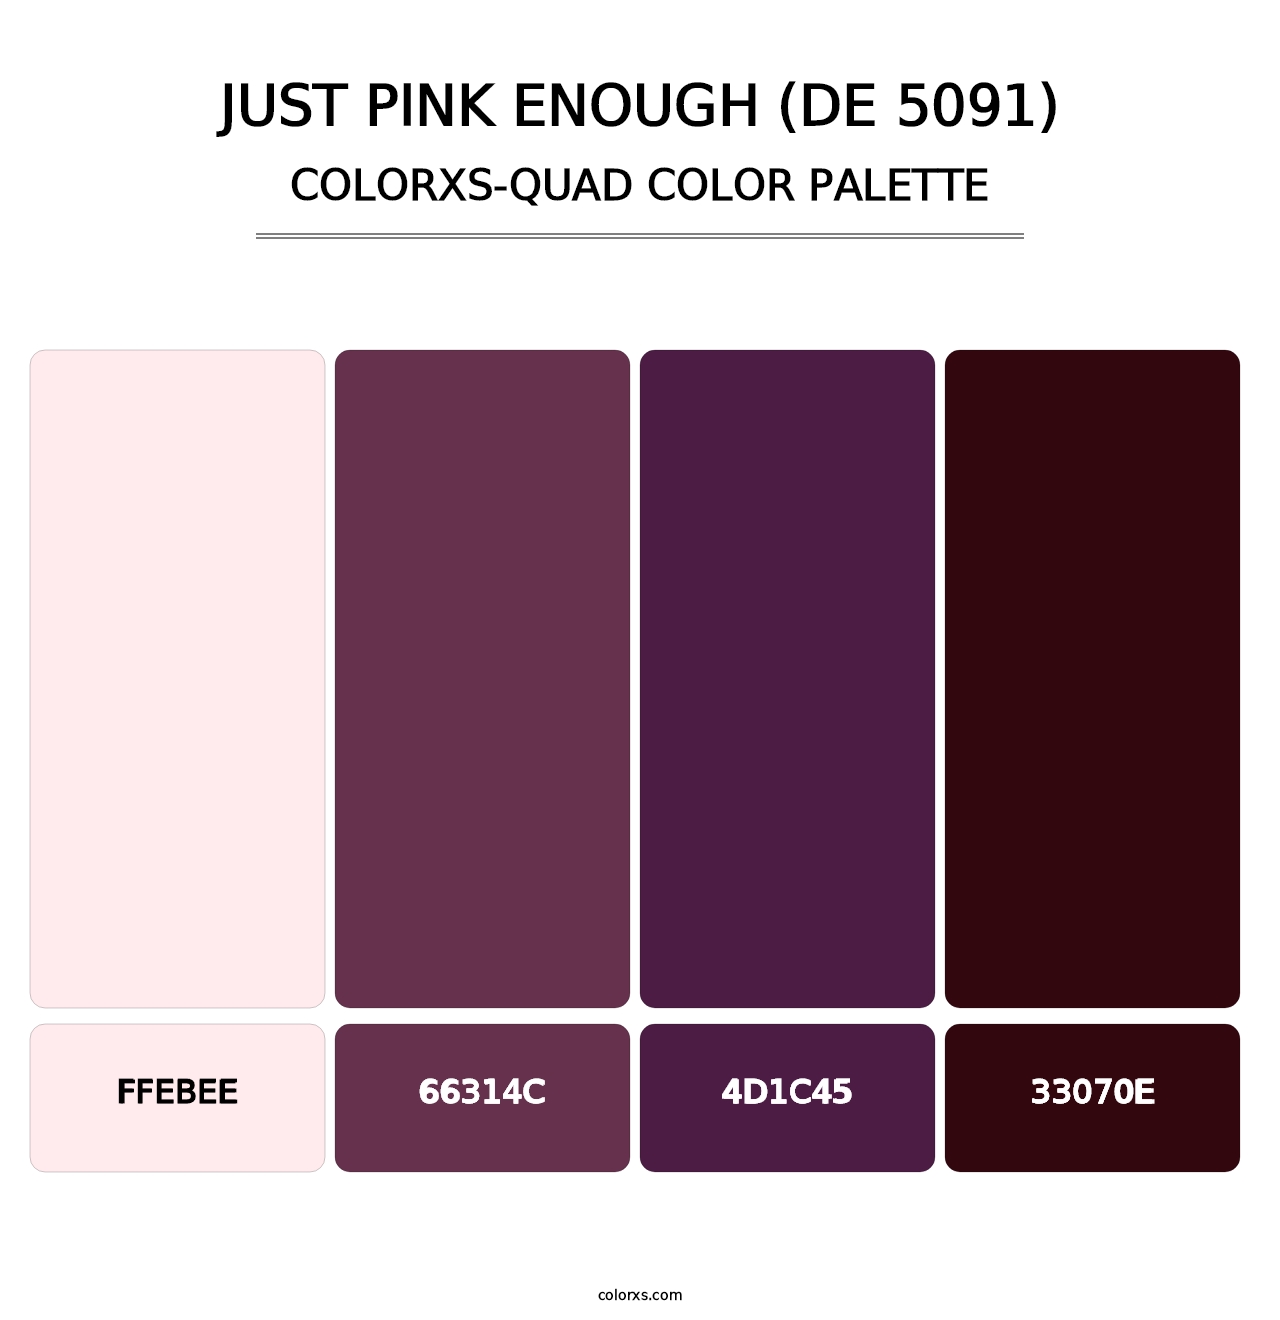 Just Pink Enough (DE 5091) - Colorxs Quad Palette